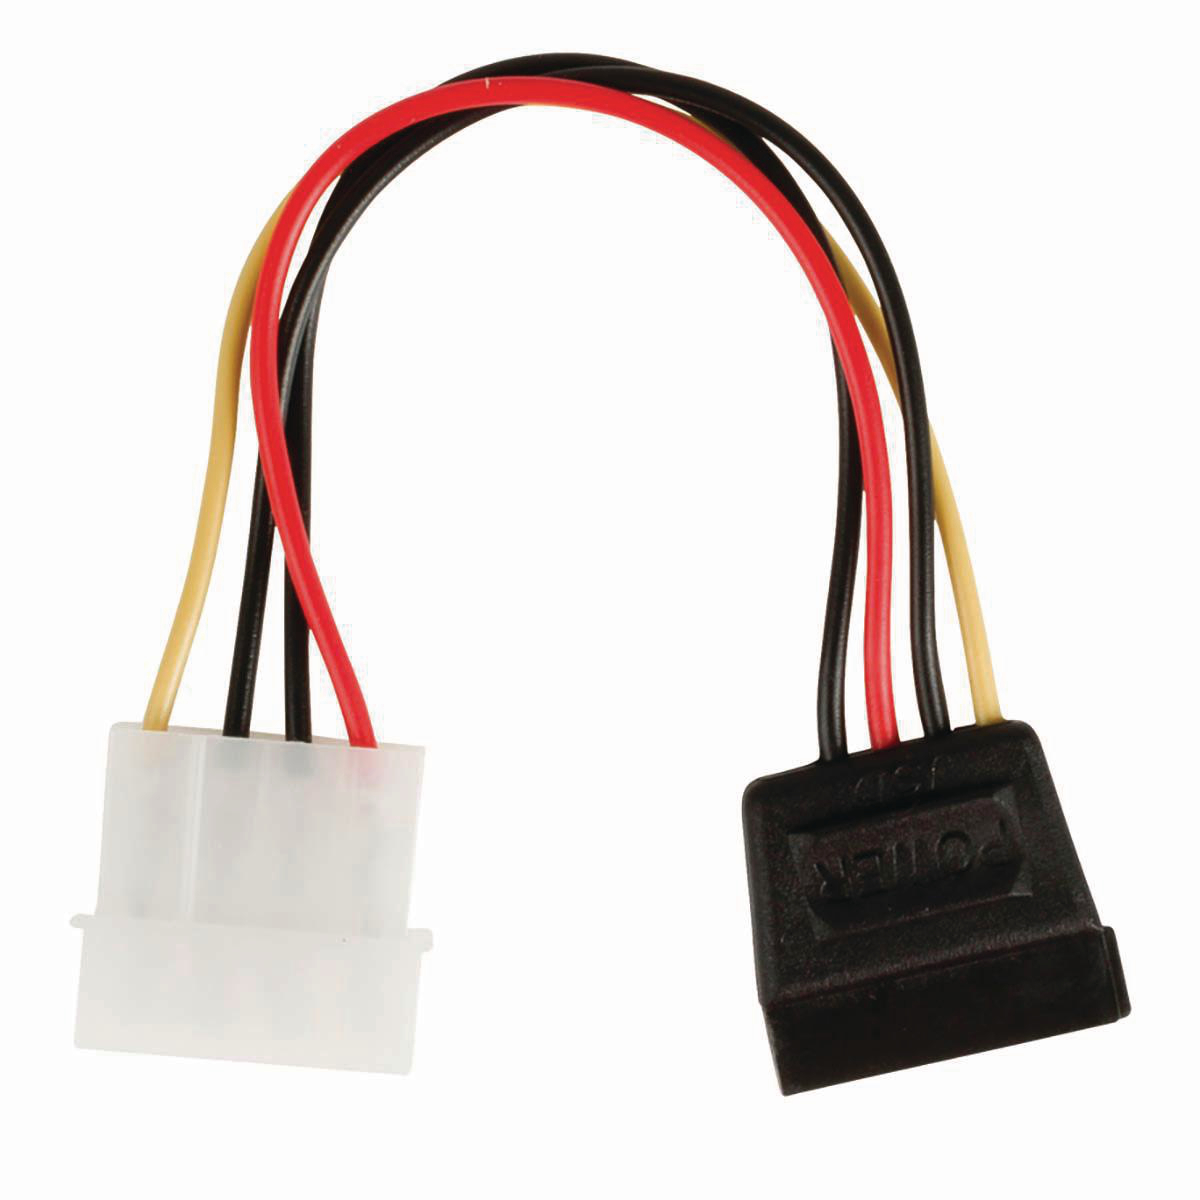 Interní napájecí kabel | Molex Zástrčka - SATA 15-pin Zásuvka | 0,15 m | Různé